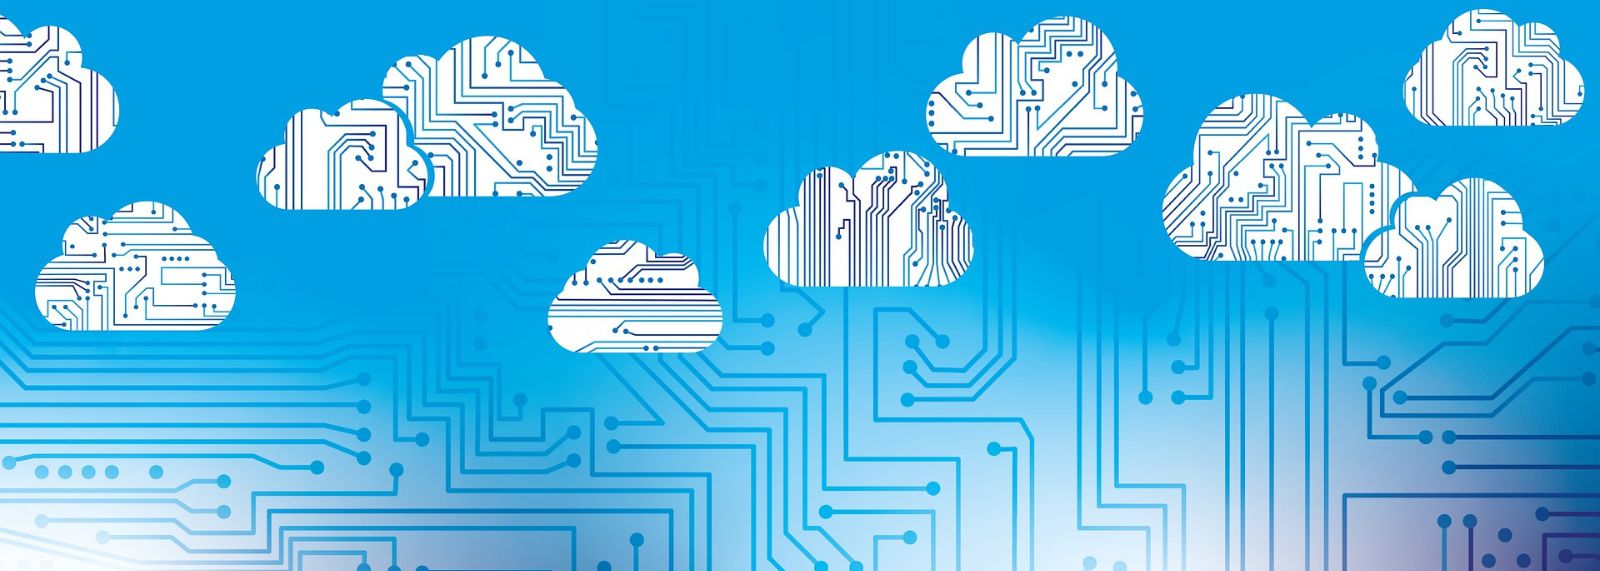 5 razones por las que el avance de cloud computing es imparable